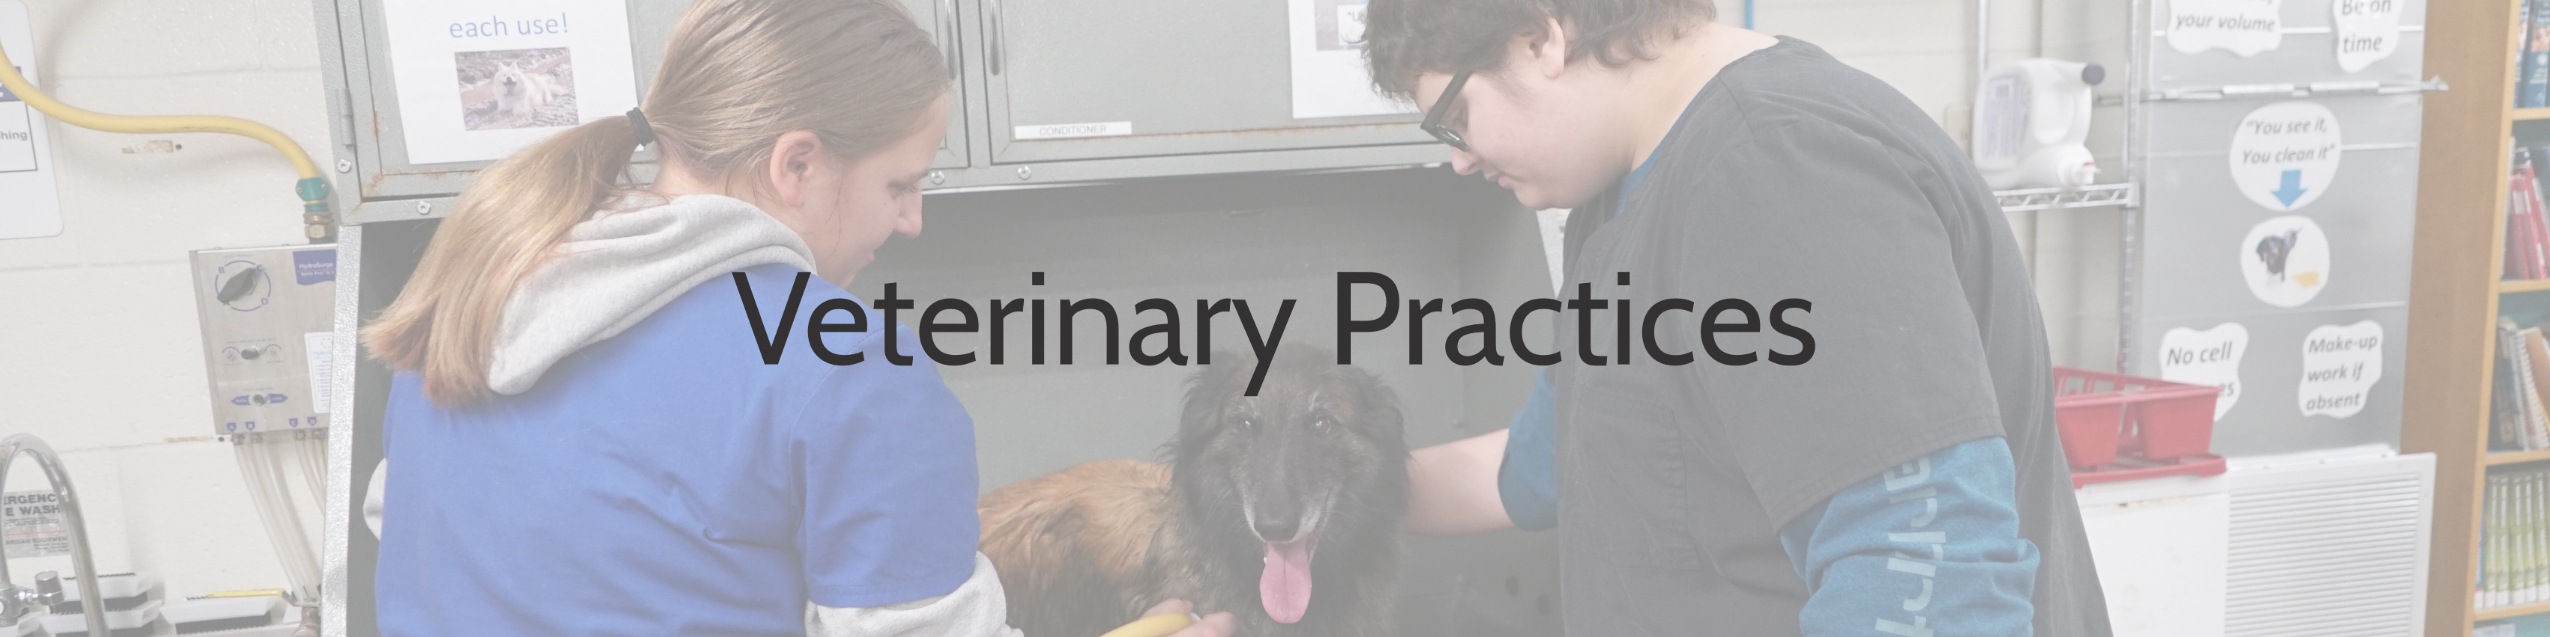 Veterinary Practices 